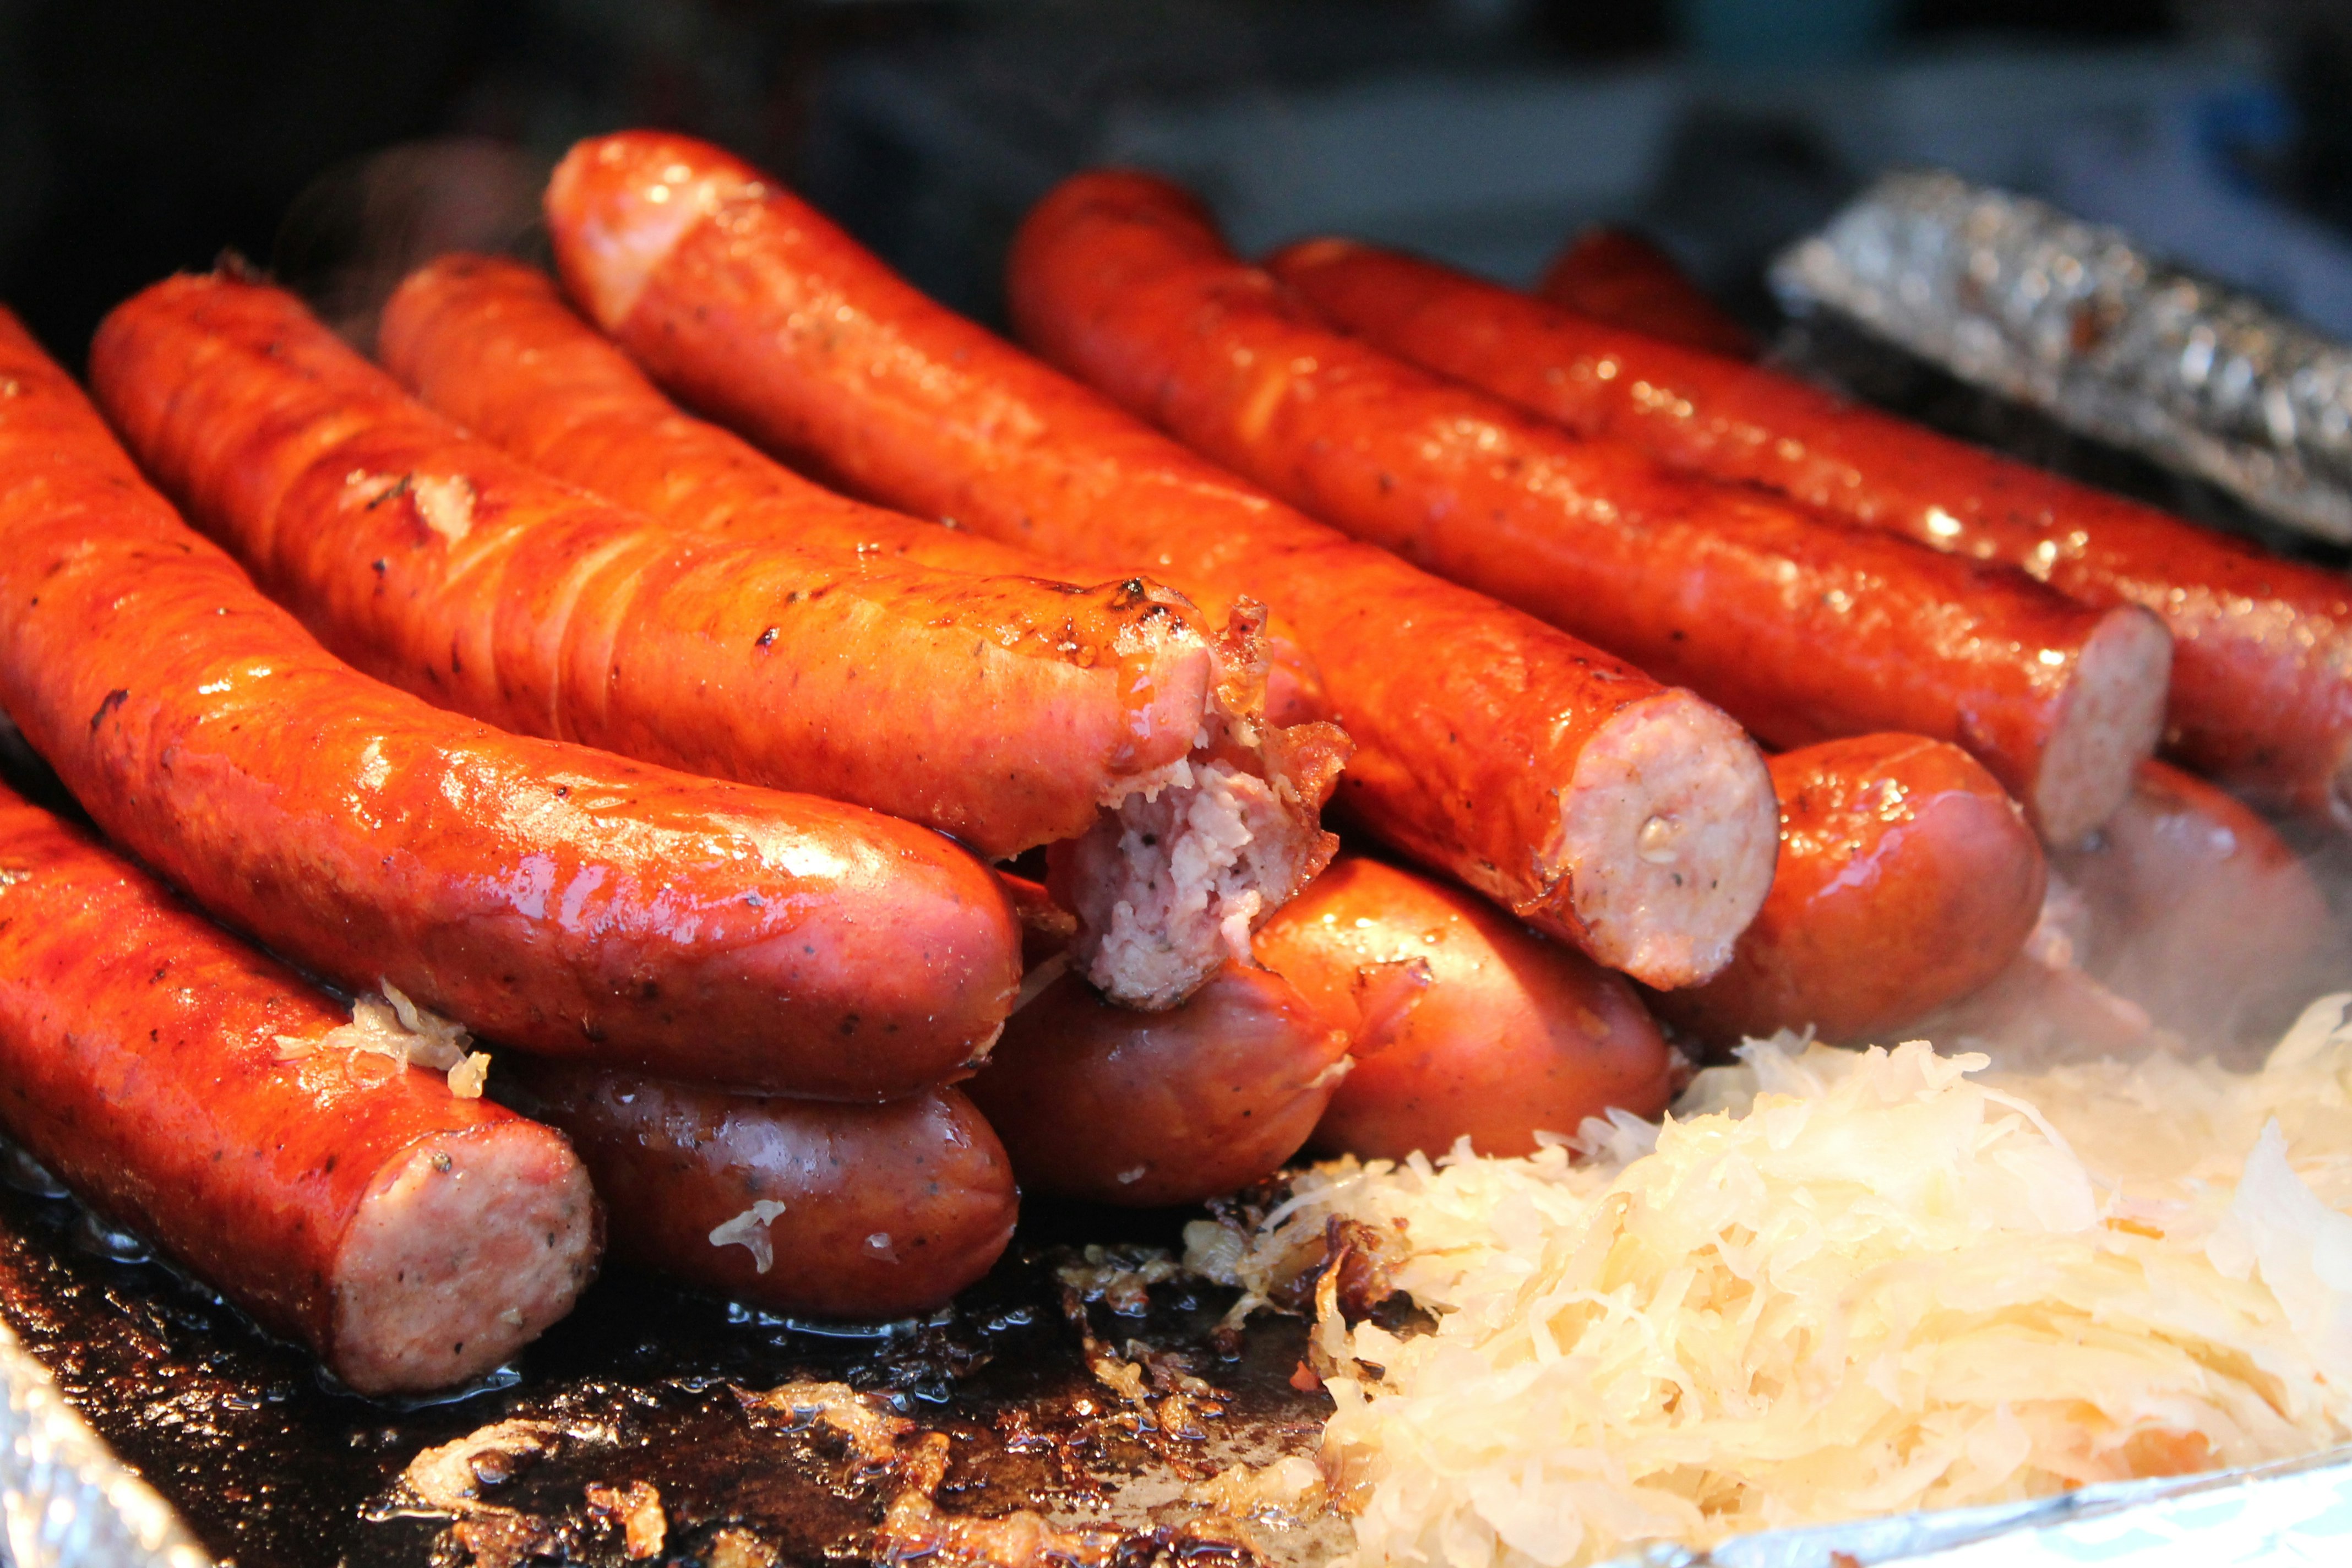 Sausages cooking at Windsor market